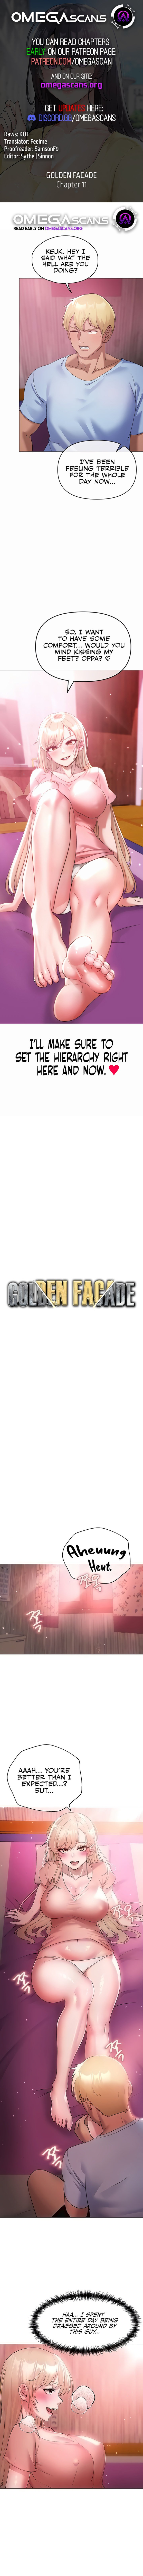 golden-facade-chap-11-0